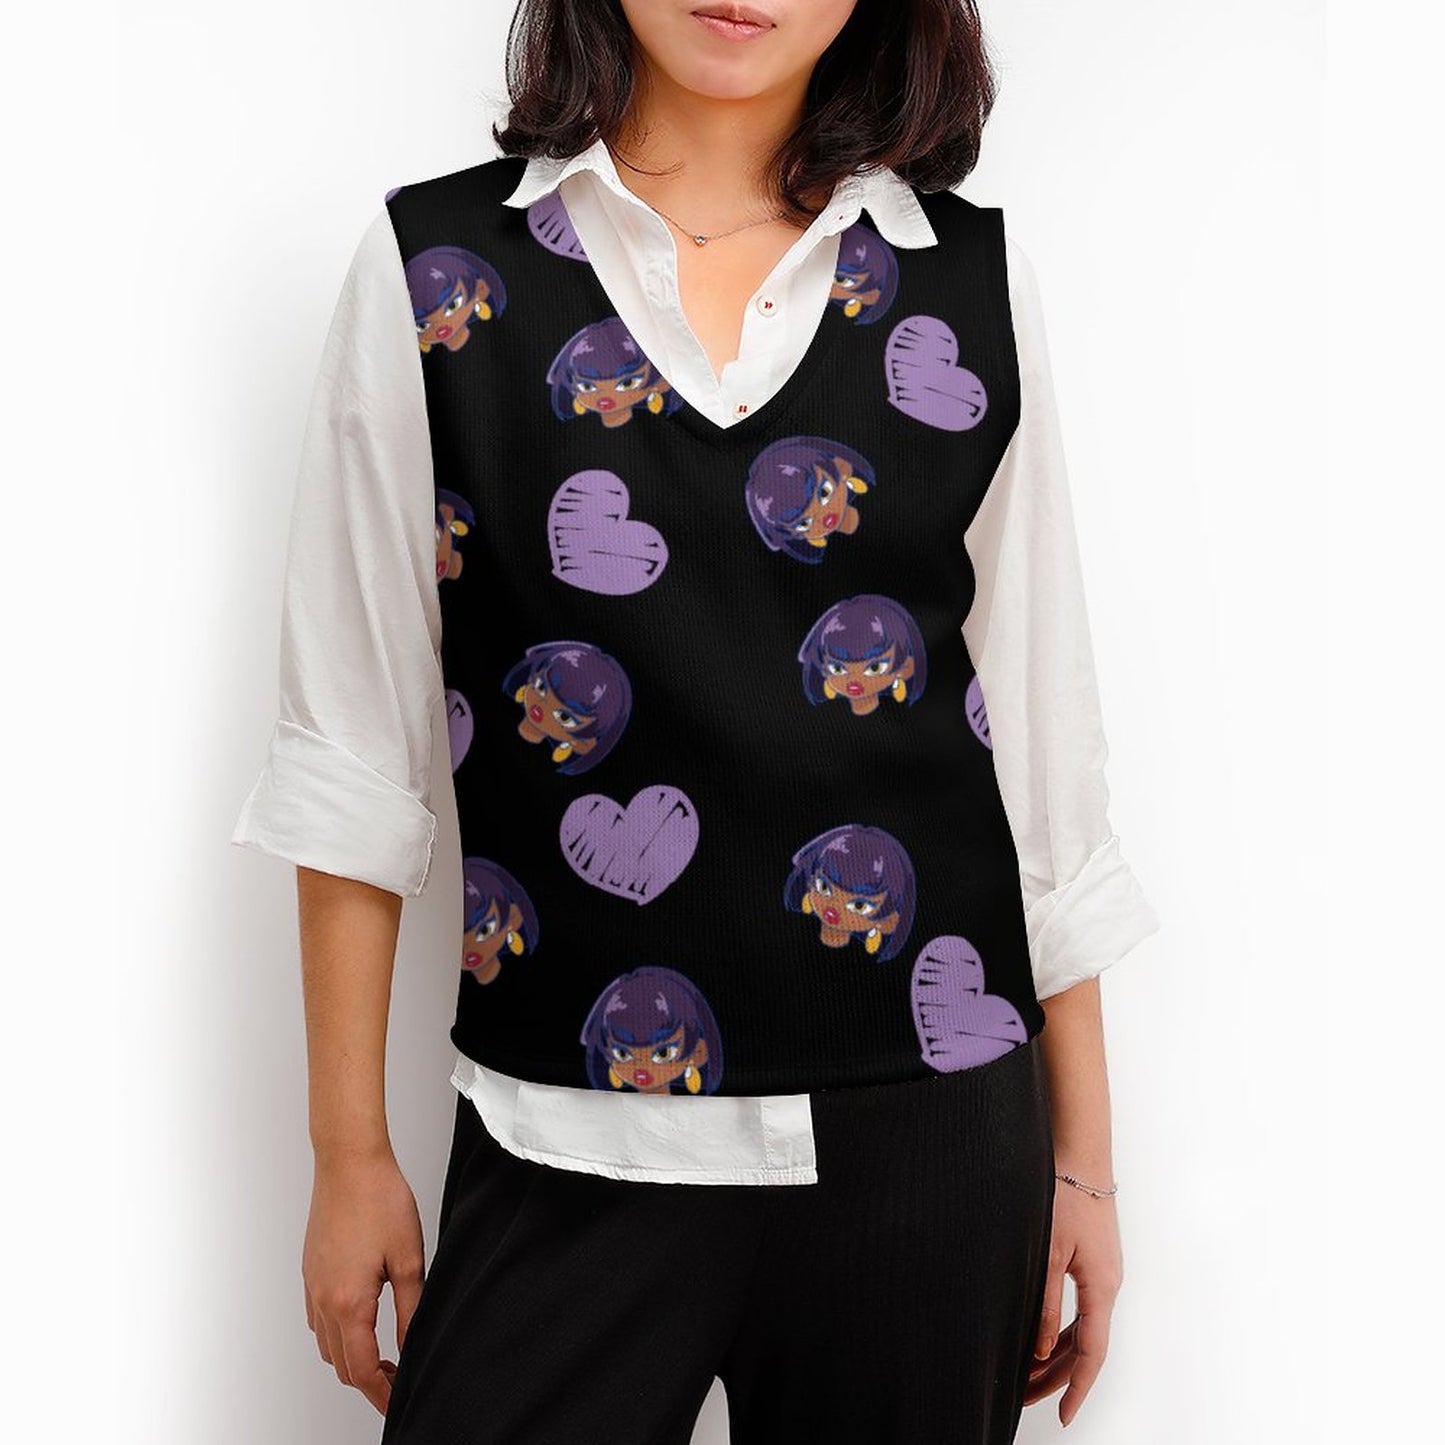 Online Custom Casual Wear for Women Women's Knitted Vest Girl Heart Purple